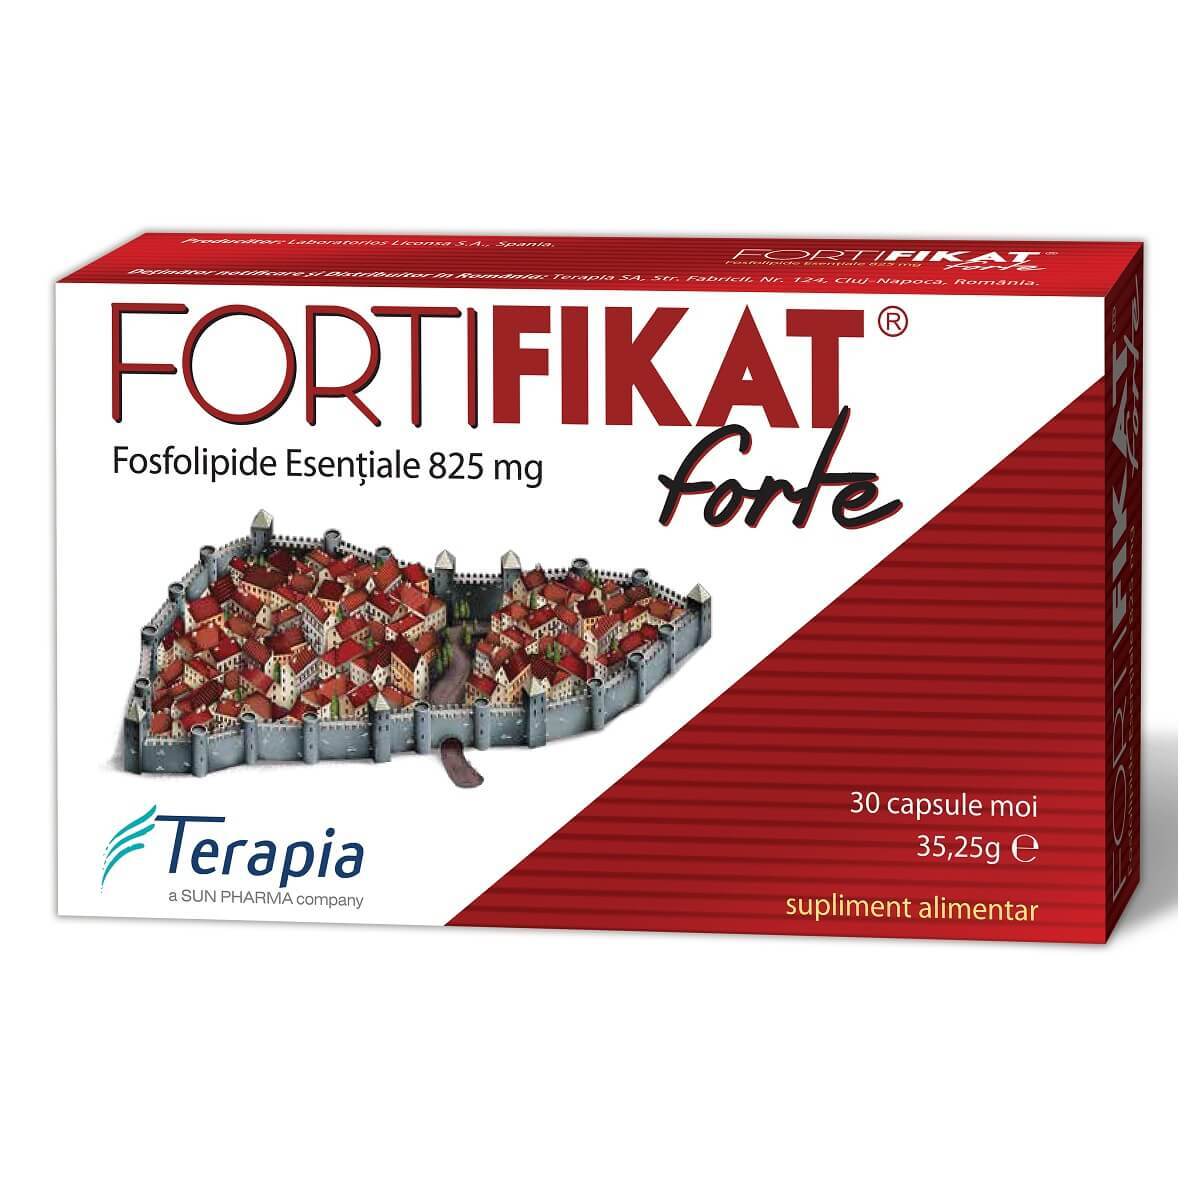 cat dureaza o cura cu fortifikat forte Fortifikat Forte 825 mg, 30 capsule, Terapia